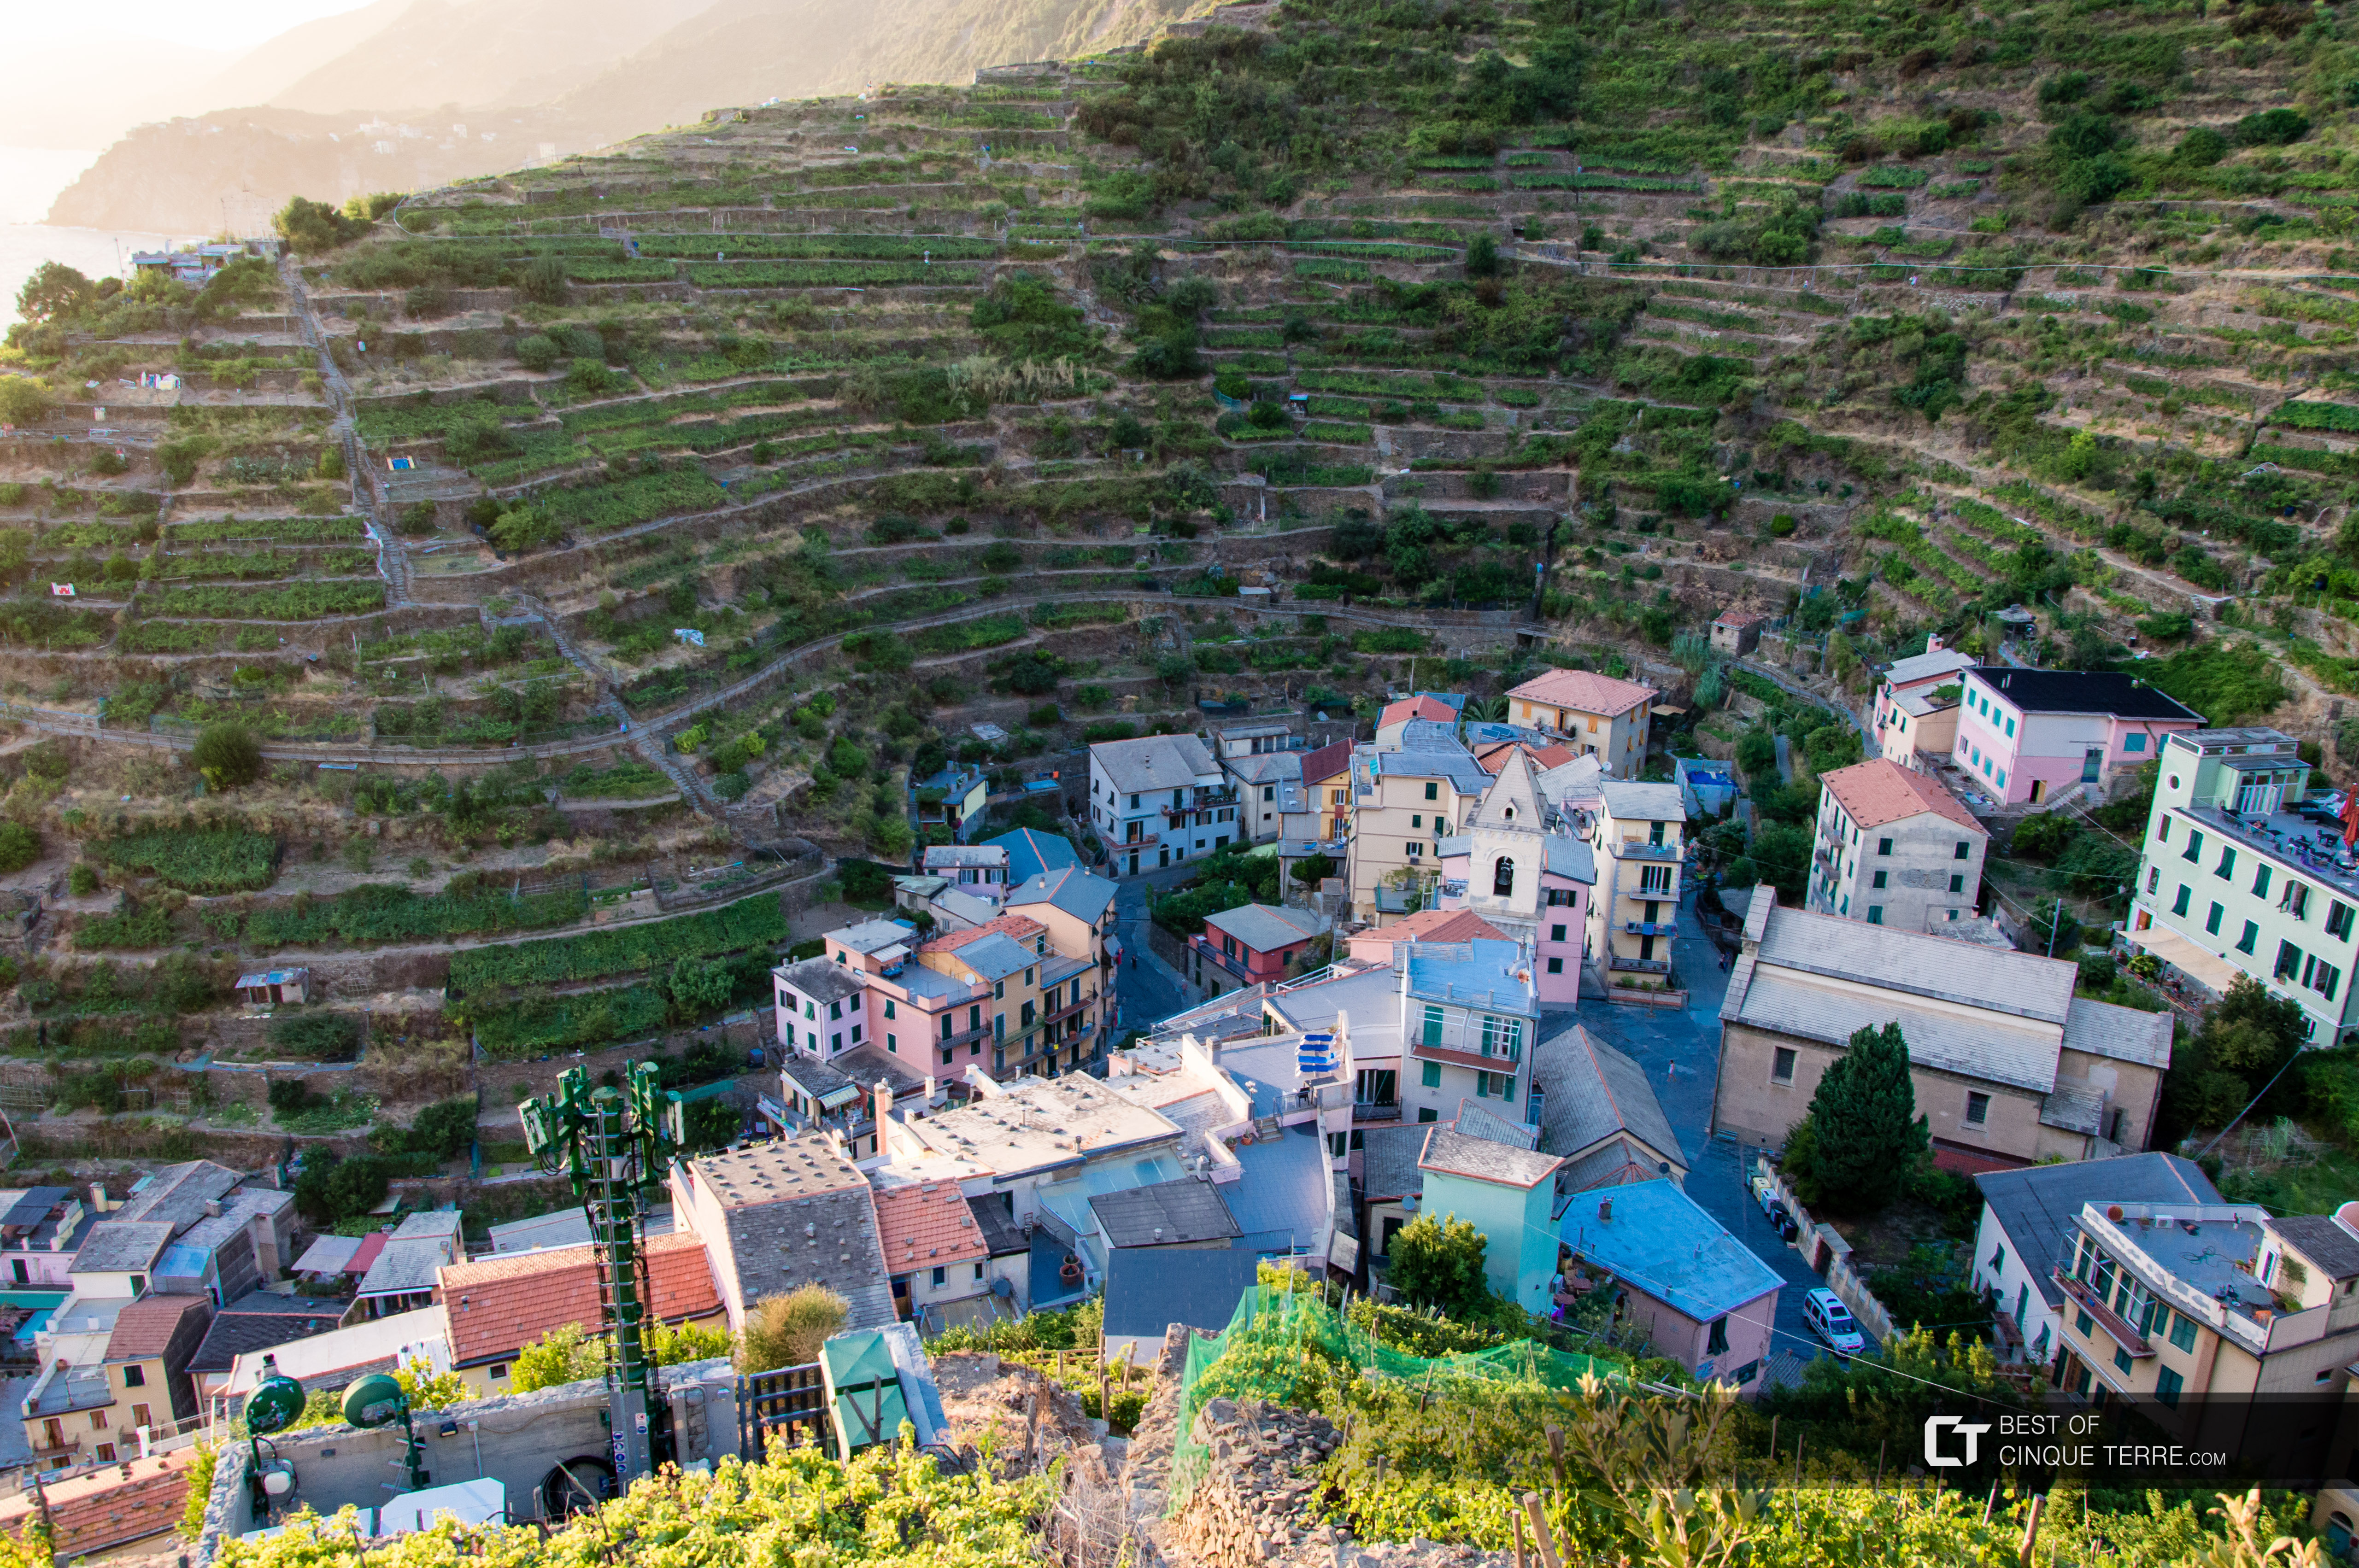 Foto da vila feita na trilha Beccara, Manarola, Cinque Terre, Itália